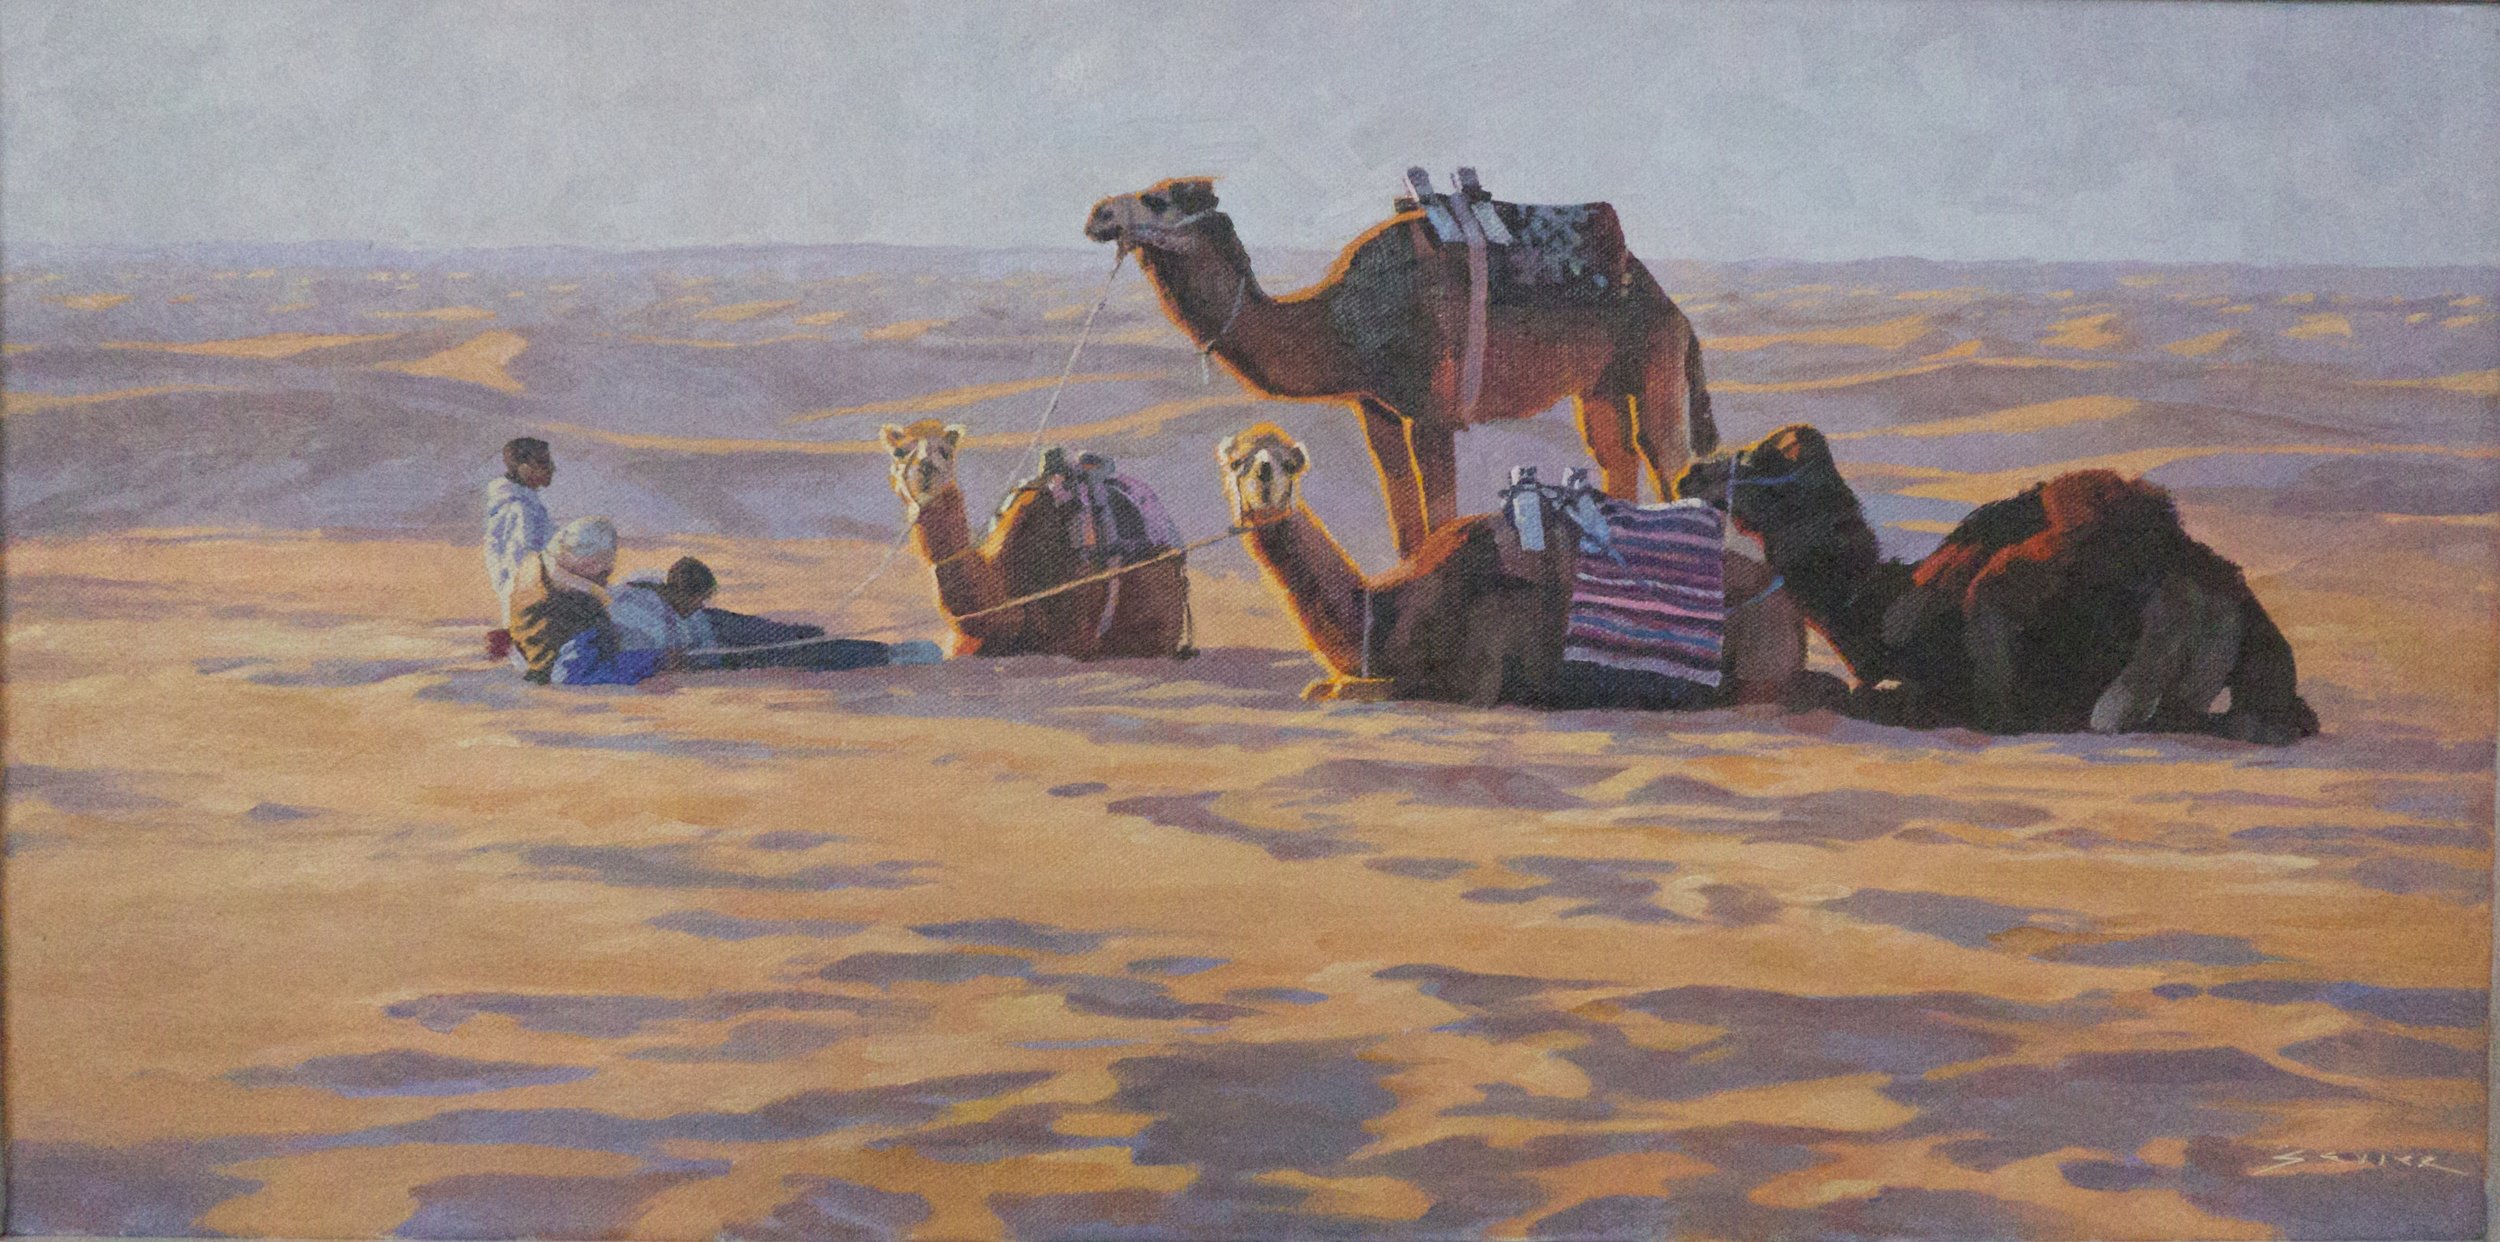  Camels of Sahara Douz, 12 x 24, oil 